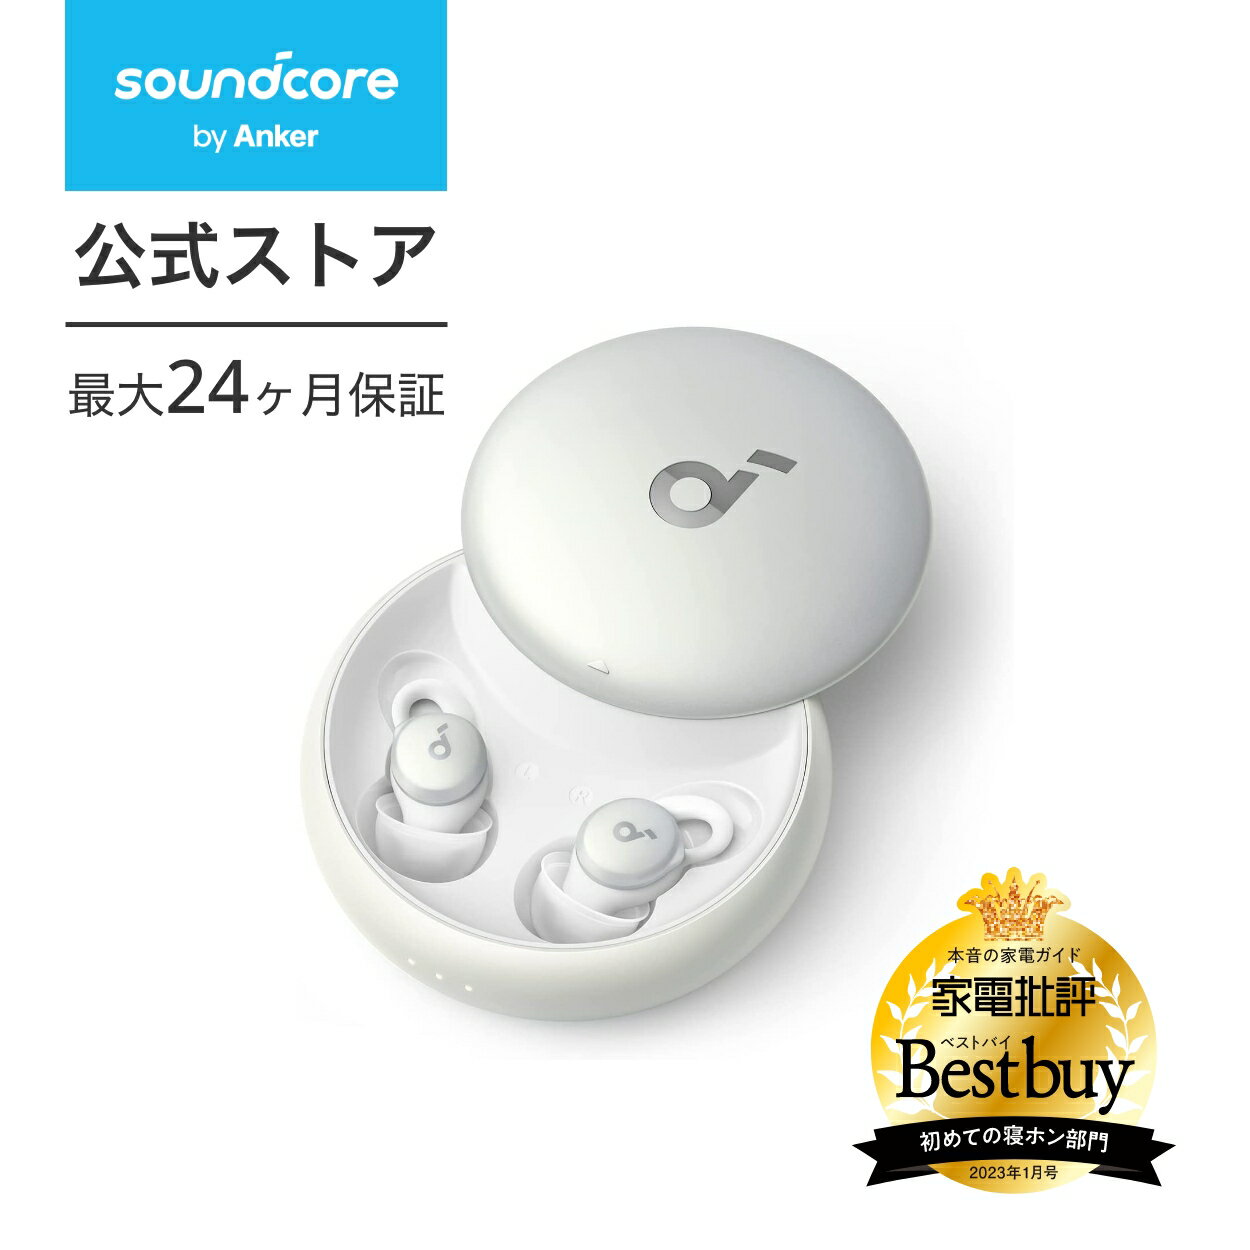 イヤホン レディース(中学生・高校生) Anker Soundcore Sleep A10 （ワイヤレスイヤホン Bluetooth 5.2）【完全ワイヤレスイヤホン / IPX4防水規格 / 最大47時間音楽再生 / 専用アプリ対応 / 睡眠時間のモニタリング / コンパクト / 軽量設計 / PSE技術基準適合】